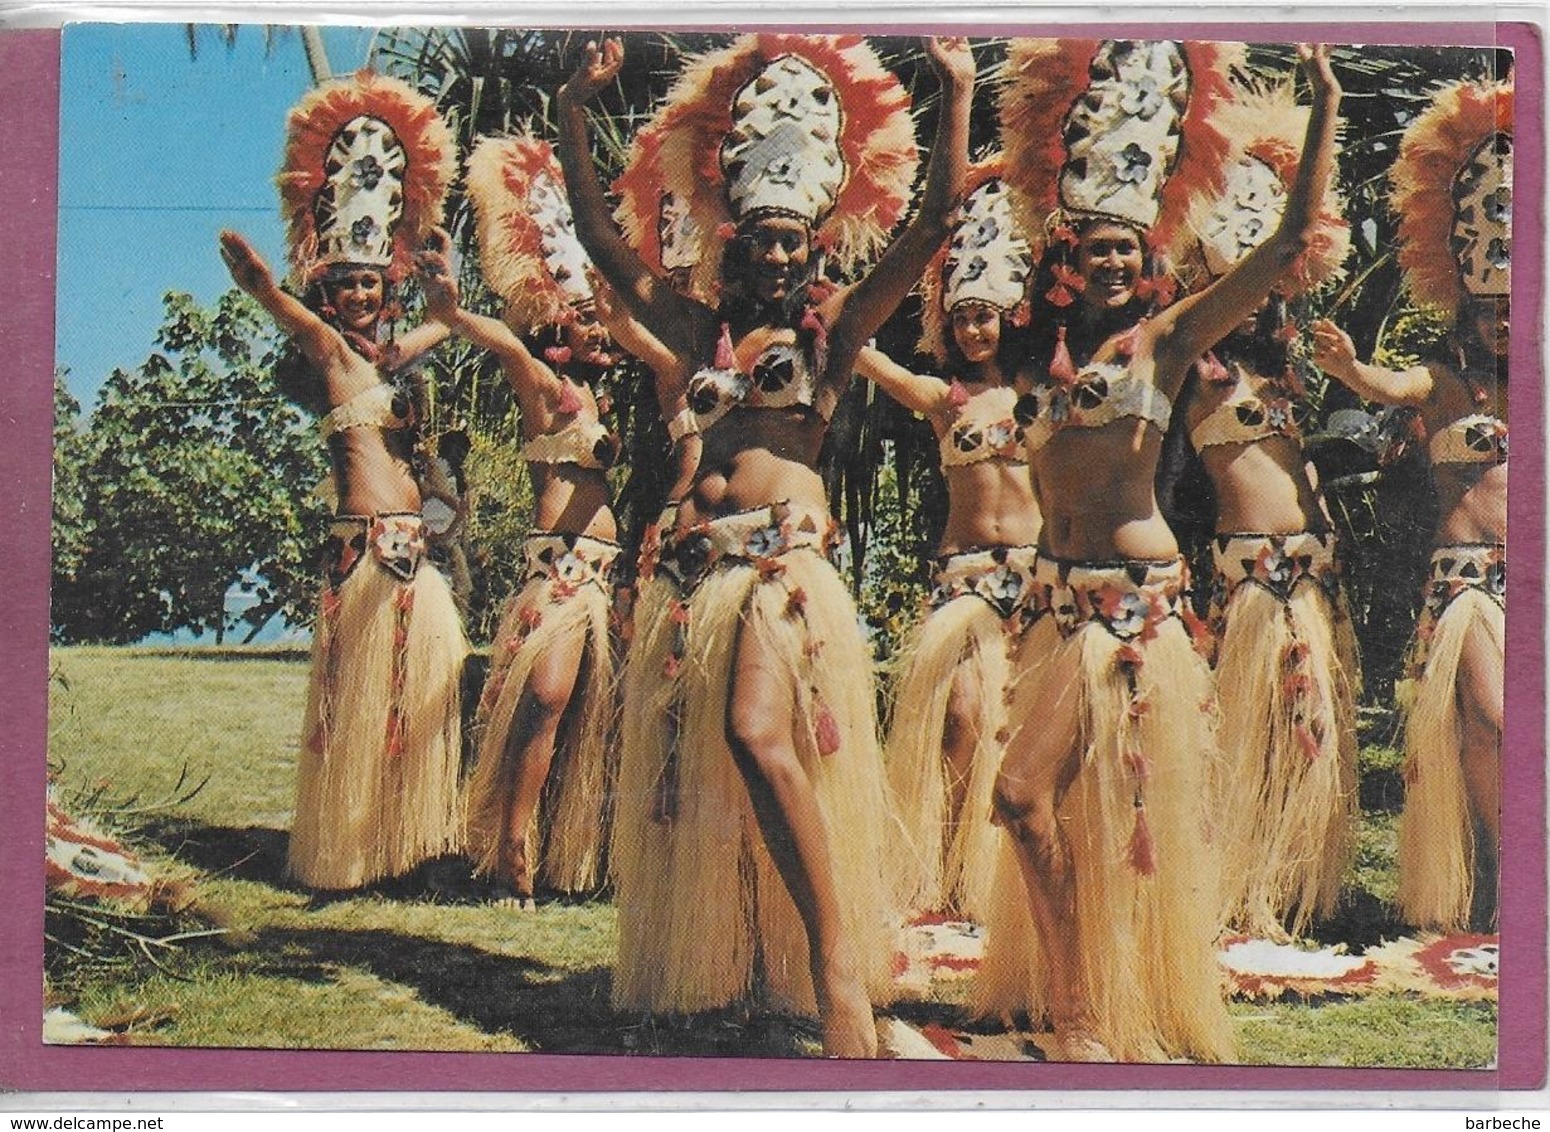 TAHITI Le Groupe Etoile De Paulette Vienot - Tahiti